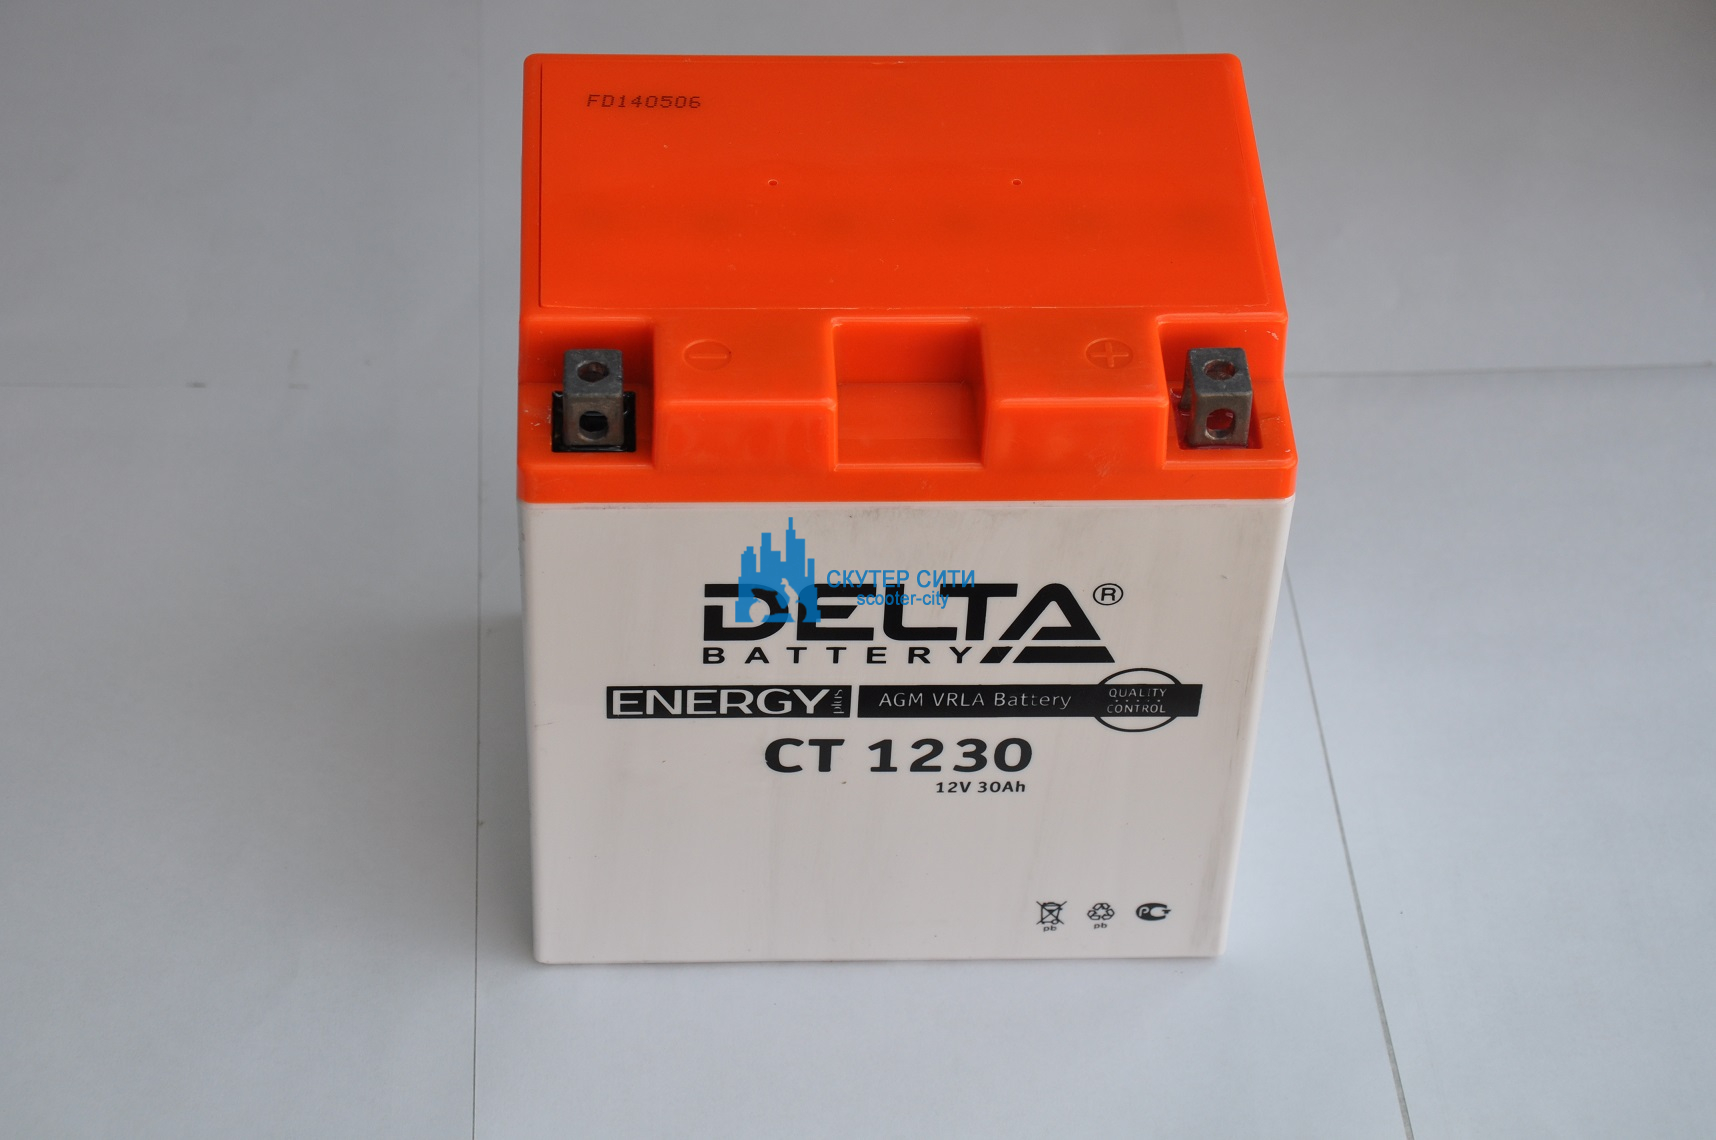 12v 30ah. Аккумулятор Delta 12v 30ah. Аккумулятор Delta CT - 12v / 30ah (1230) шт. Аккумуляторная батарея eps Delta ct1230. Аккумуляторная батарея Delta CT 1230.